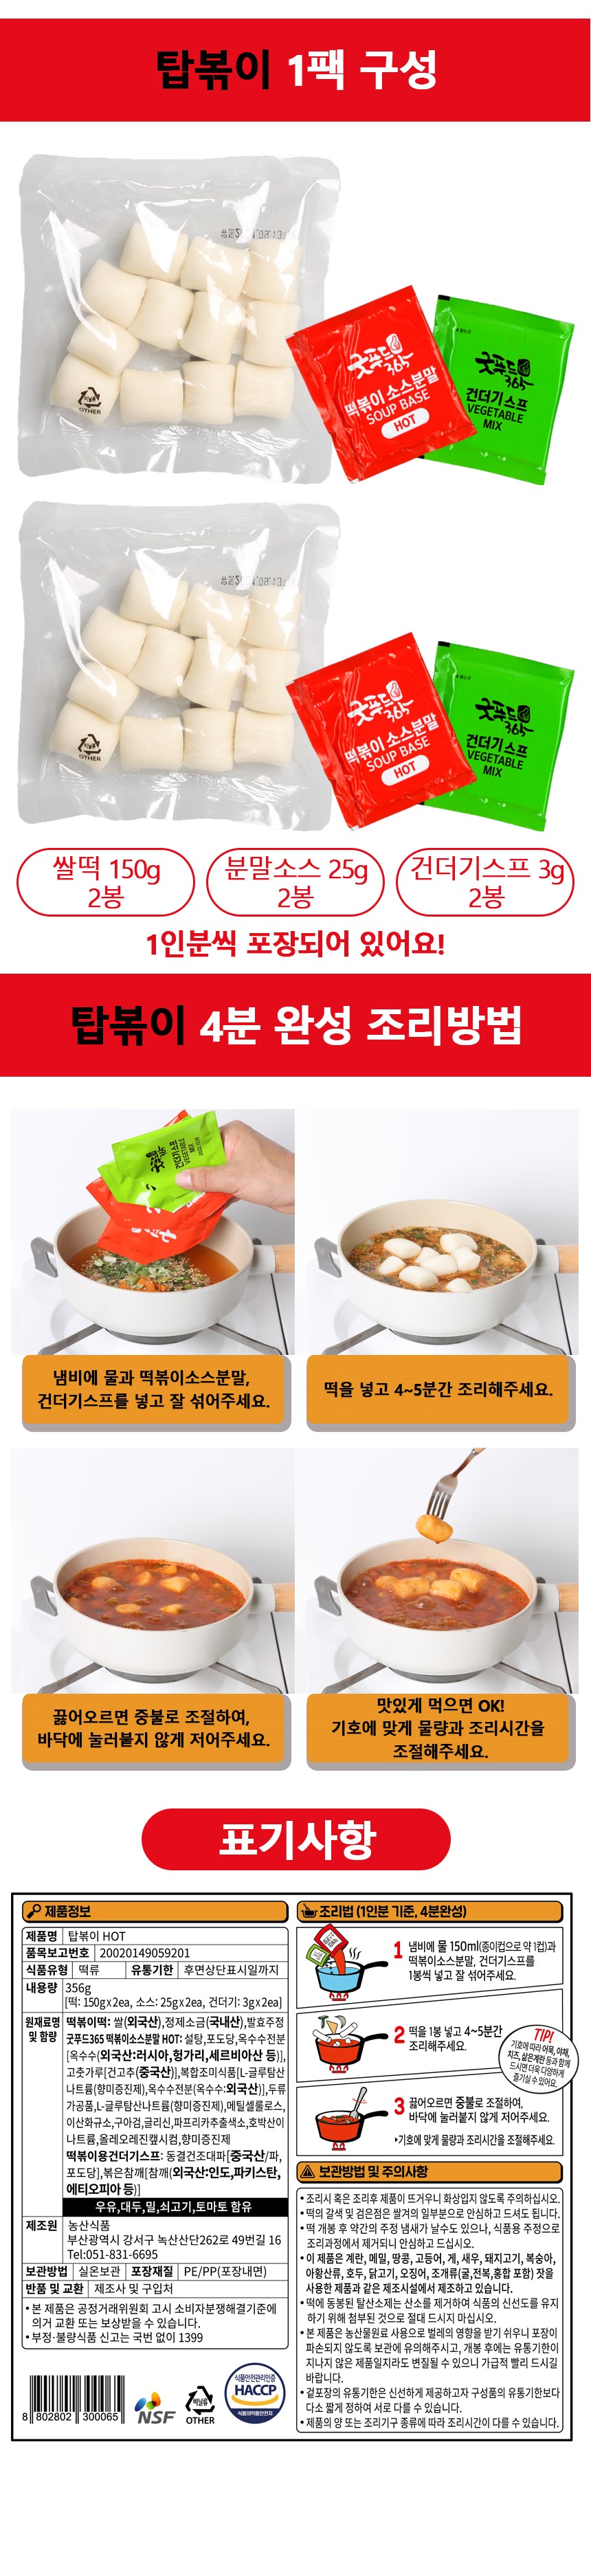 다인] 간편조리 탑볶이 - 매운맛 (미니 쌀 가래떡) 356g - 한품